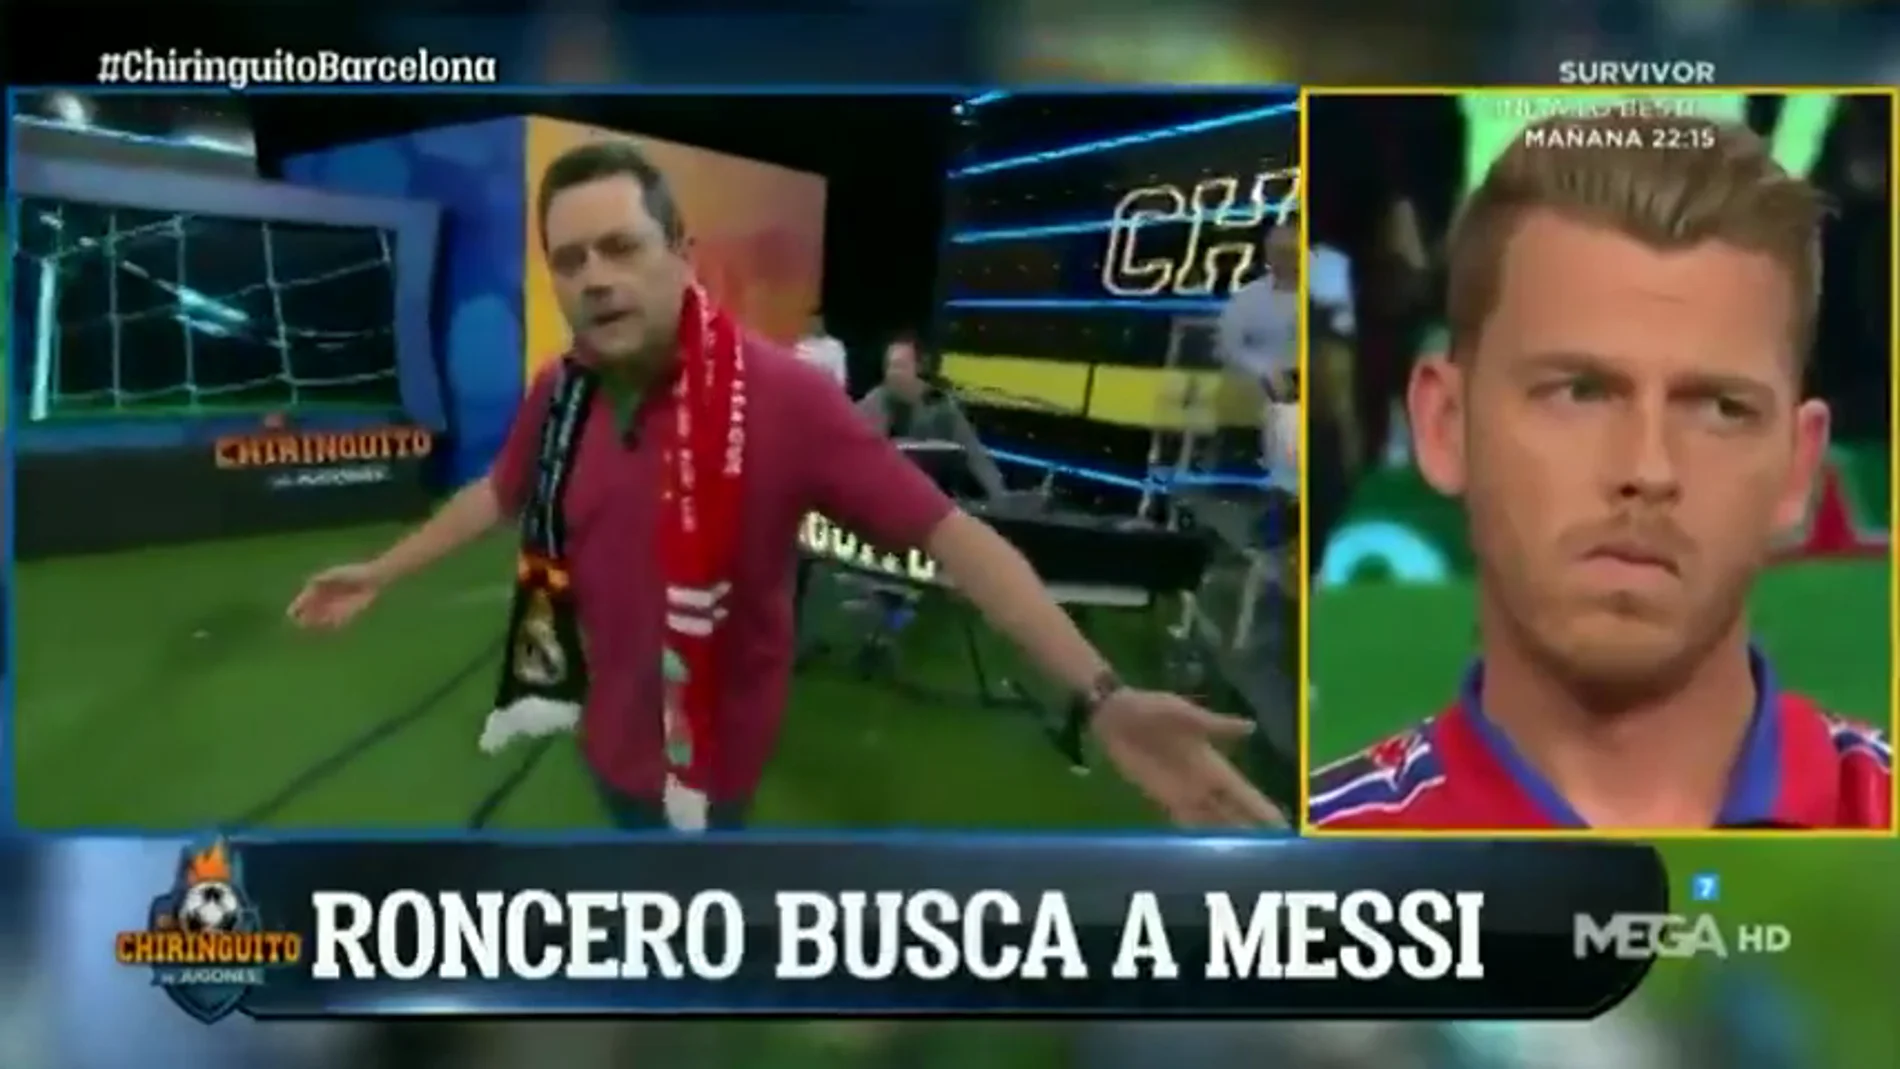 Tomás Roncero entró en el plato de 'El Chiringuito' buscando a Messi: "¿Le habéis visto...? ¡Leo! ¡Leo! ¡Chiquitito! ¿Dónde está Dios?"